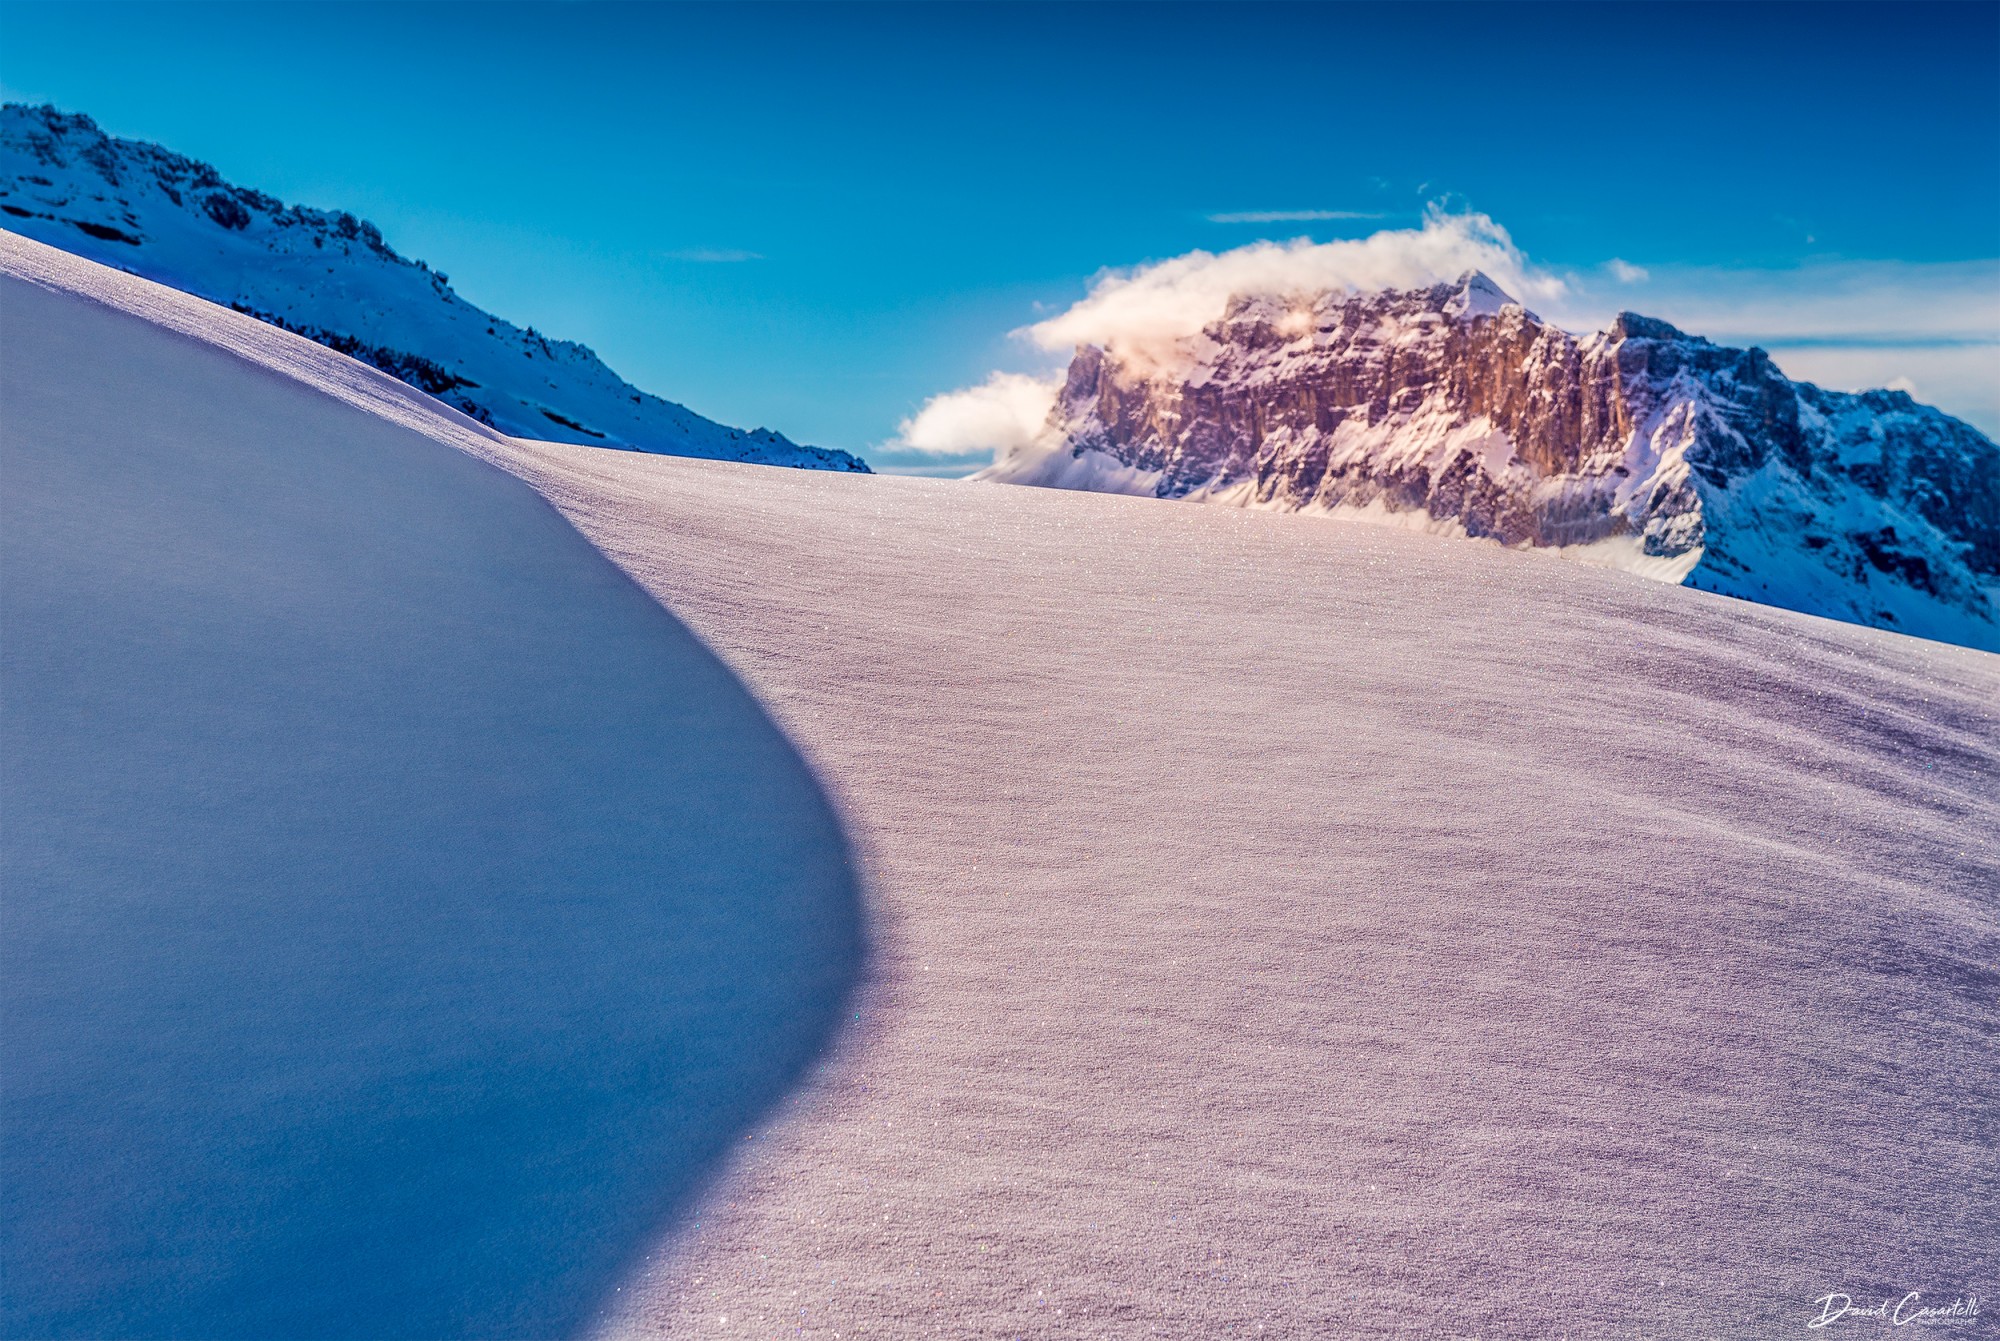 La neige était rose - David Casartelli Photographie